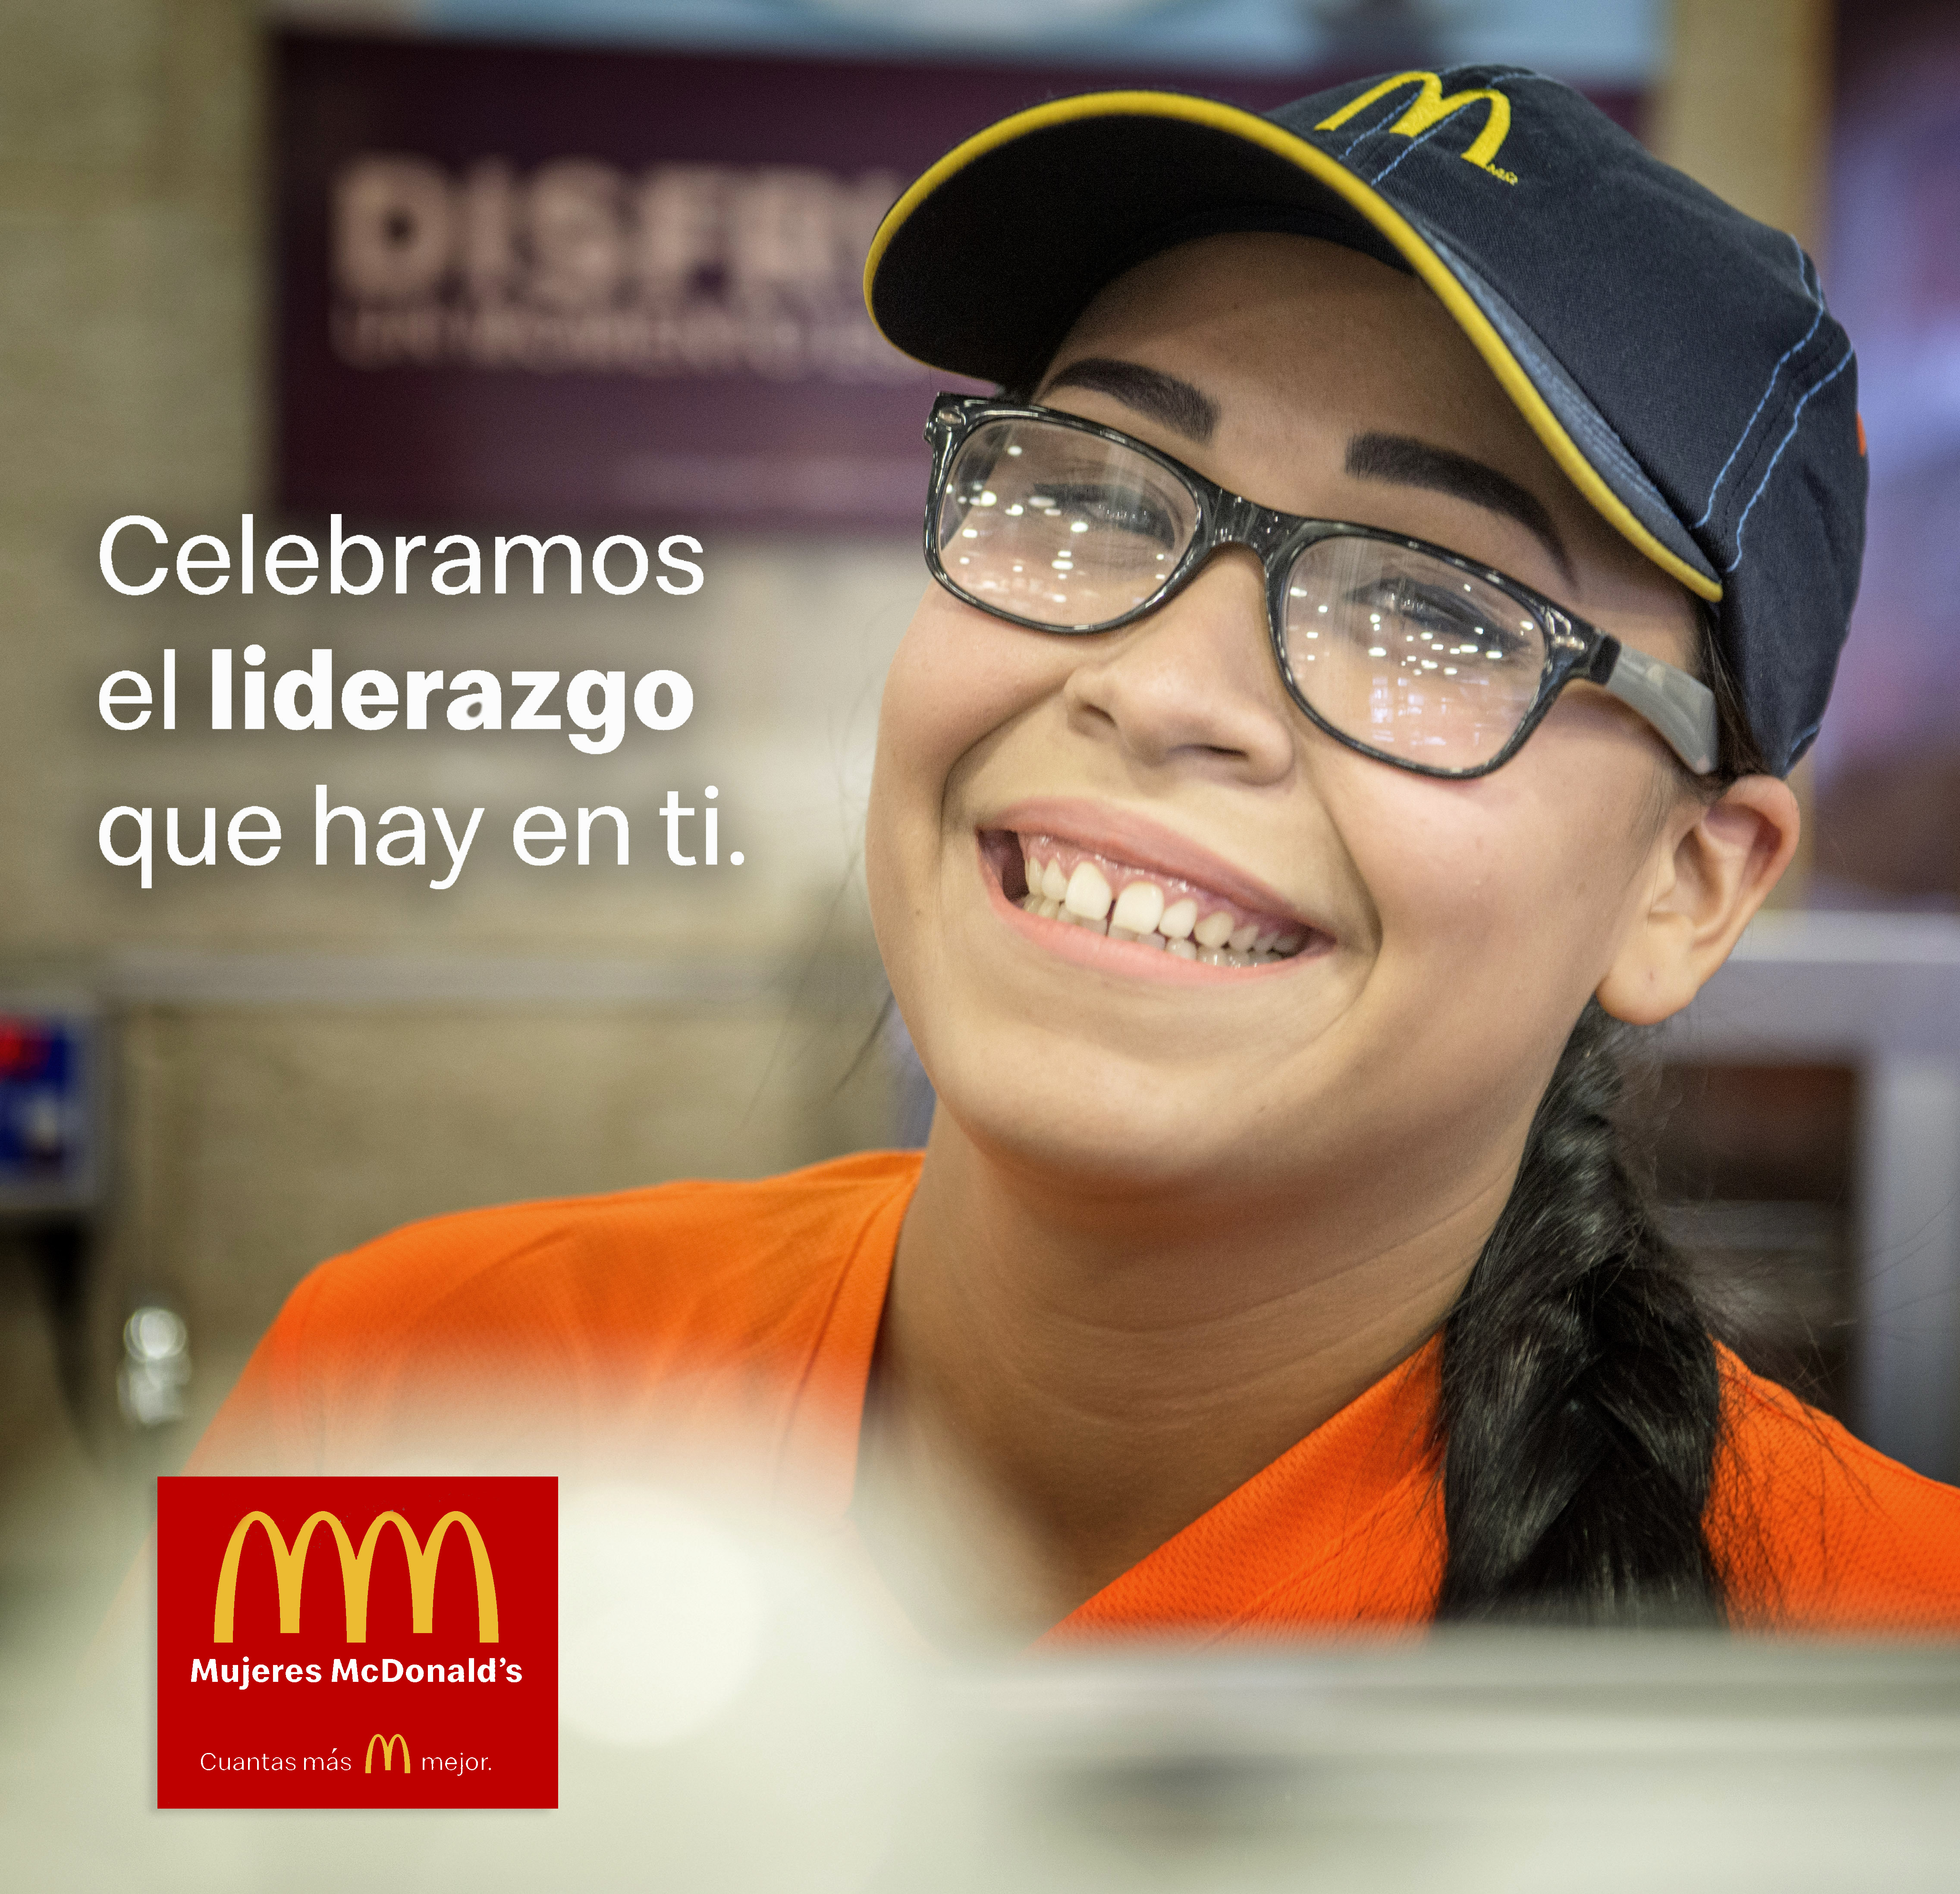 “Cuantas más mujeres mejor”: es la convicción de McDonald’s